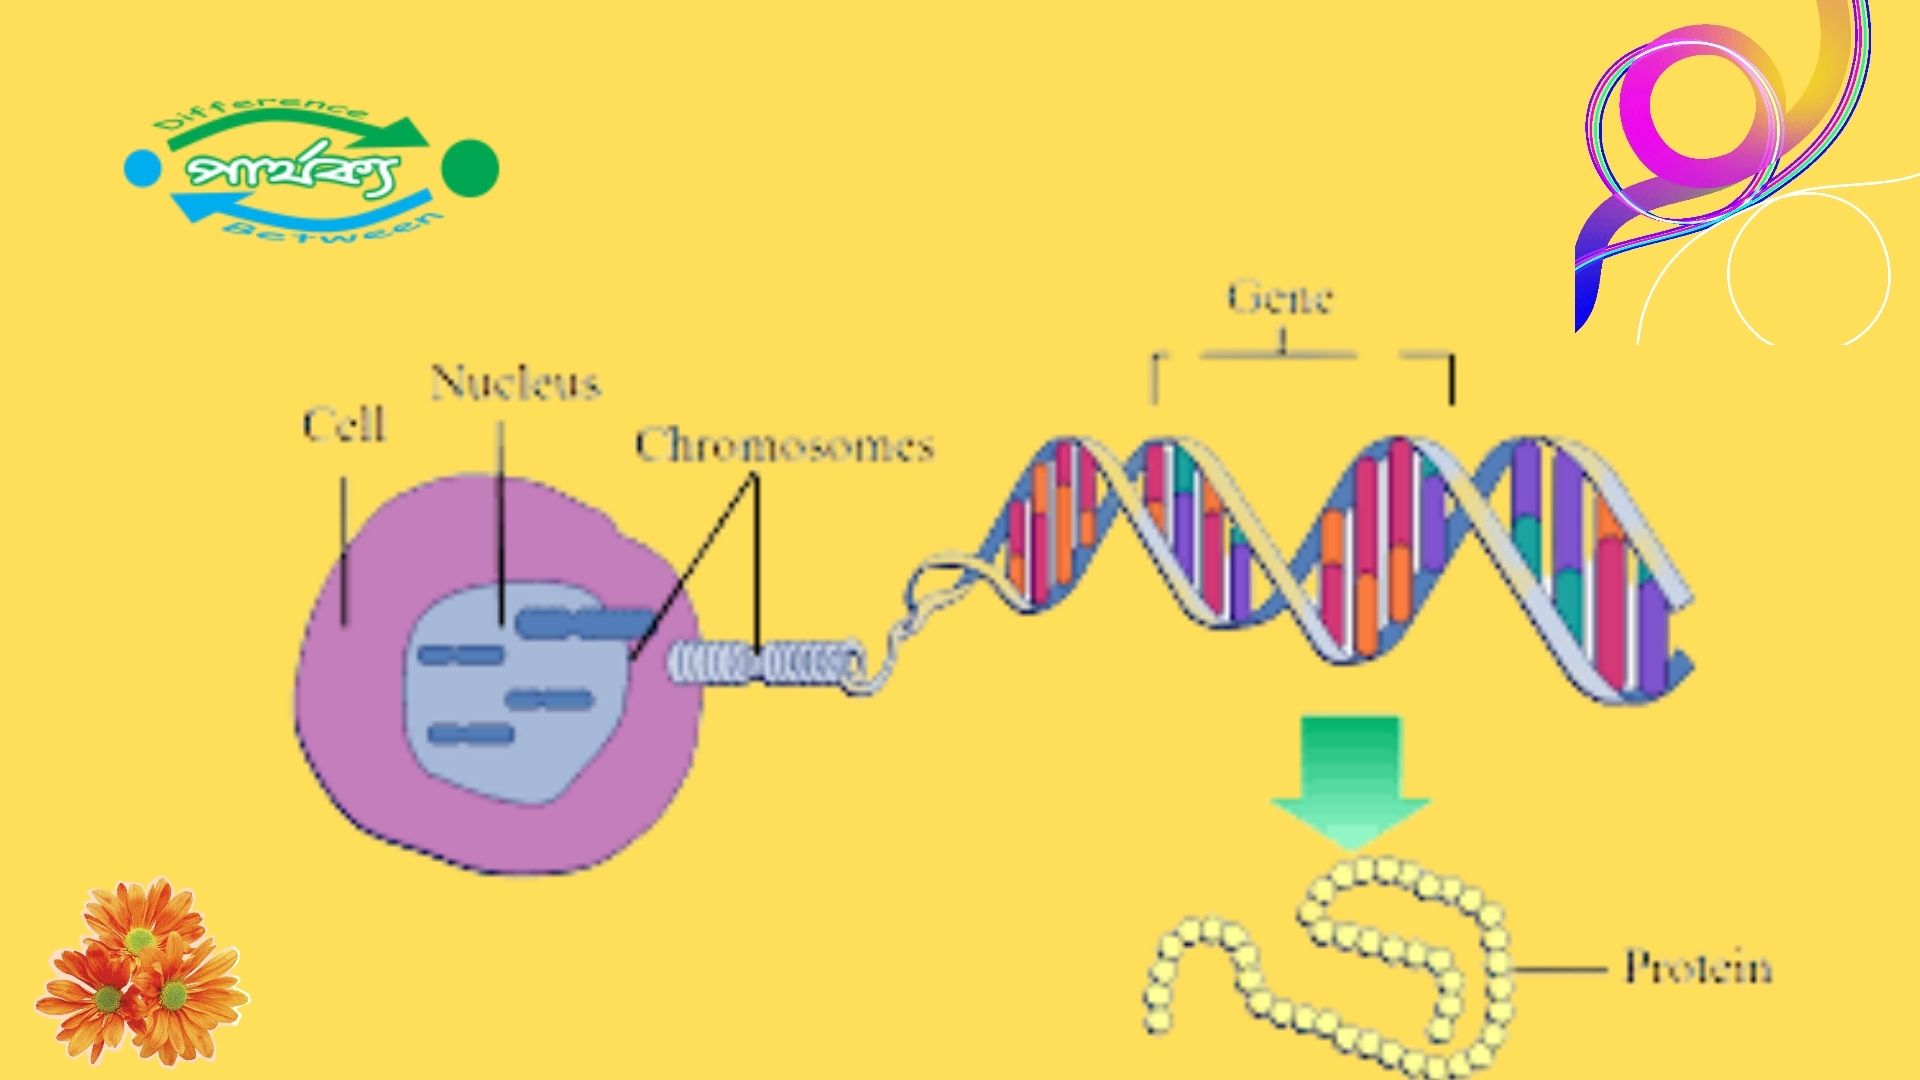 ডিএনএ (DNA) এবং আরএনএ (RNA) এর মধ্যে পার্থক্য